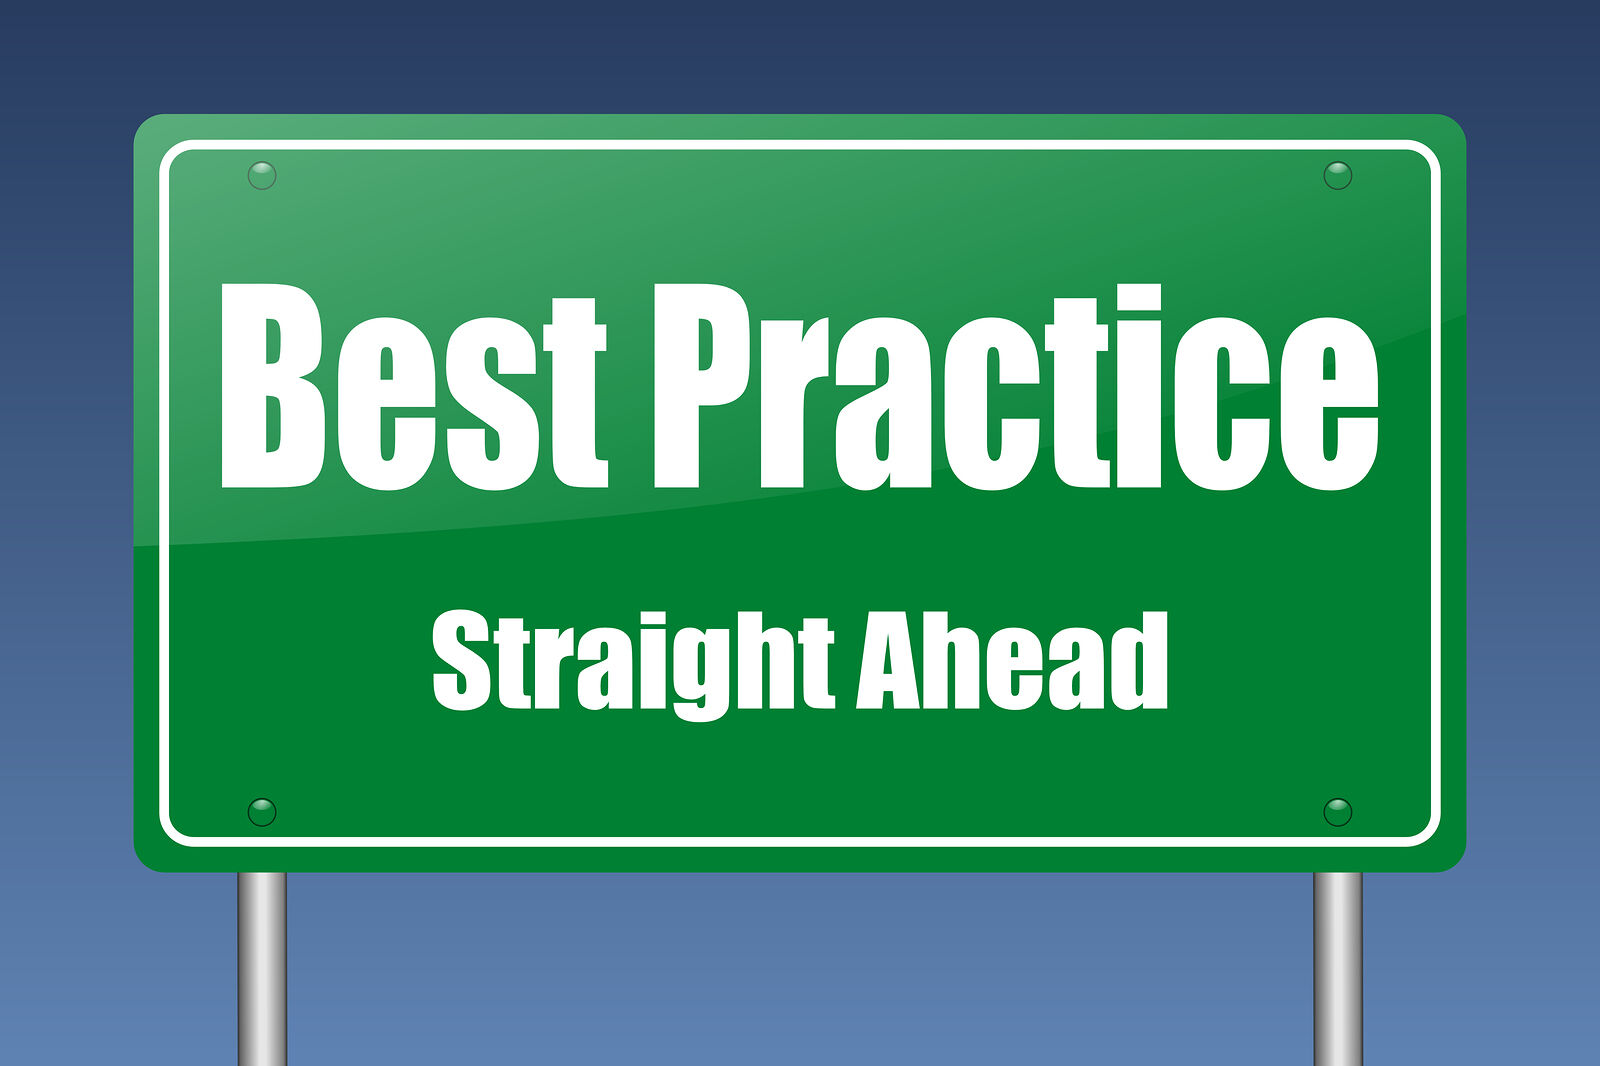 SEO best practices